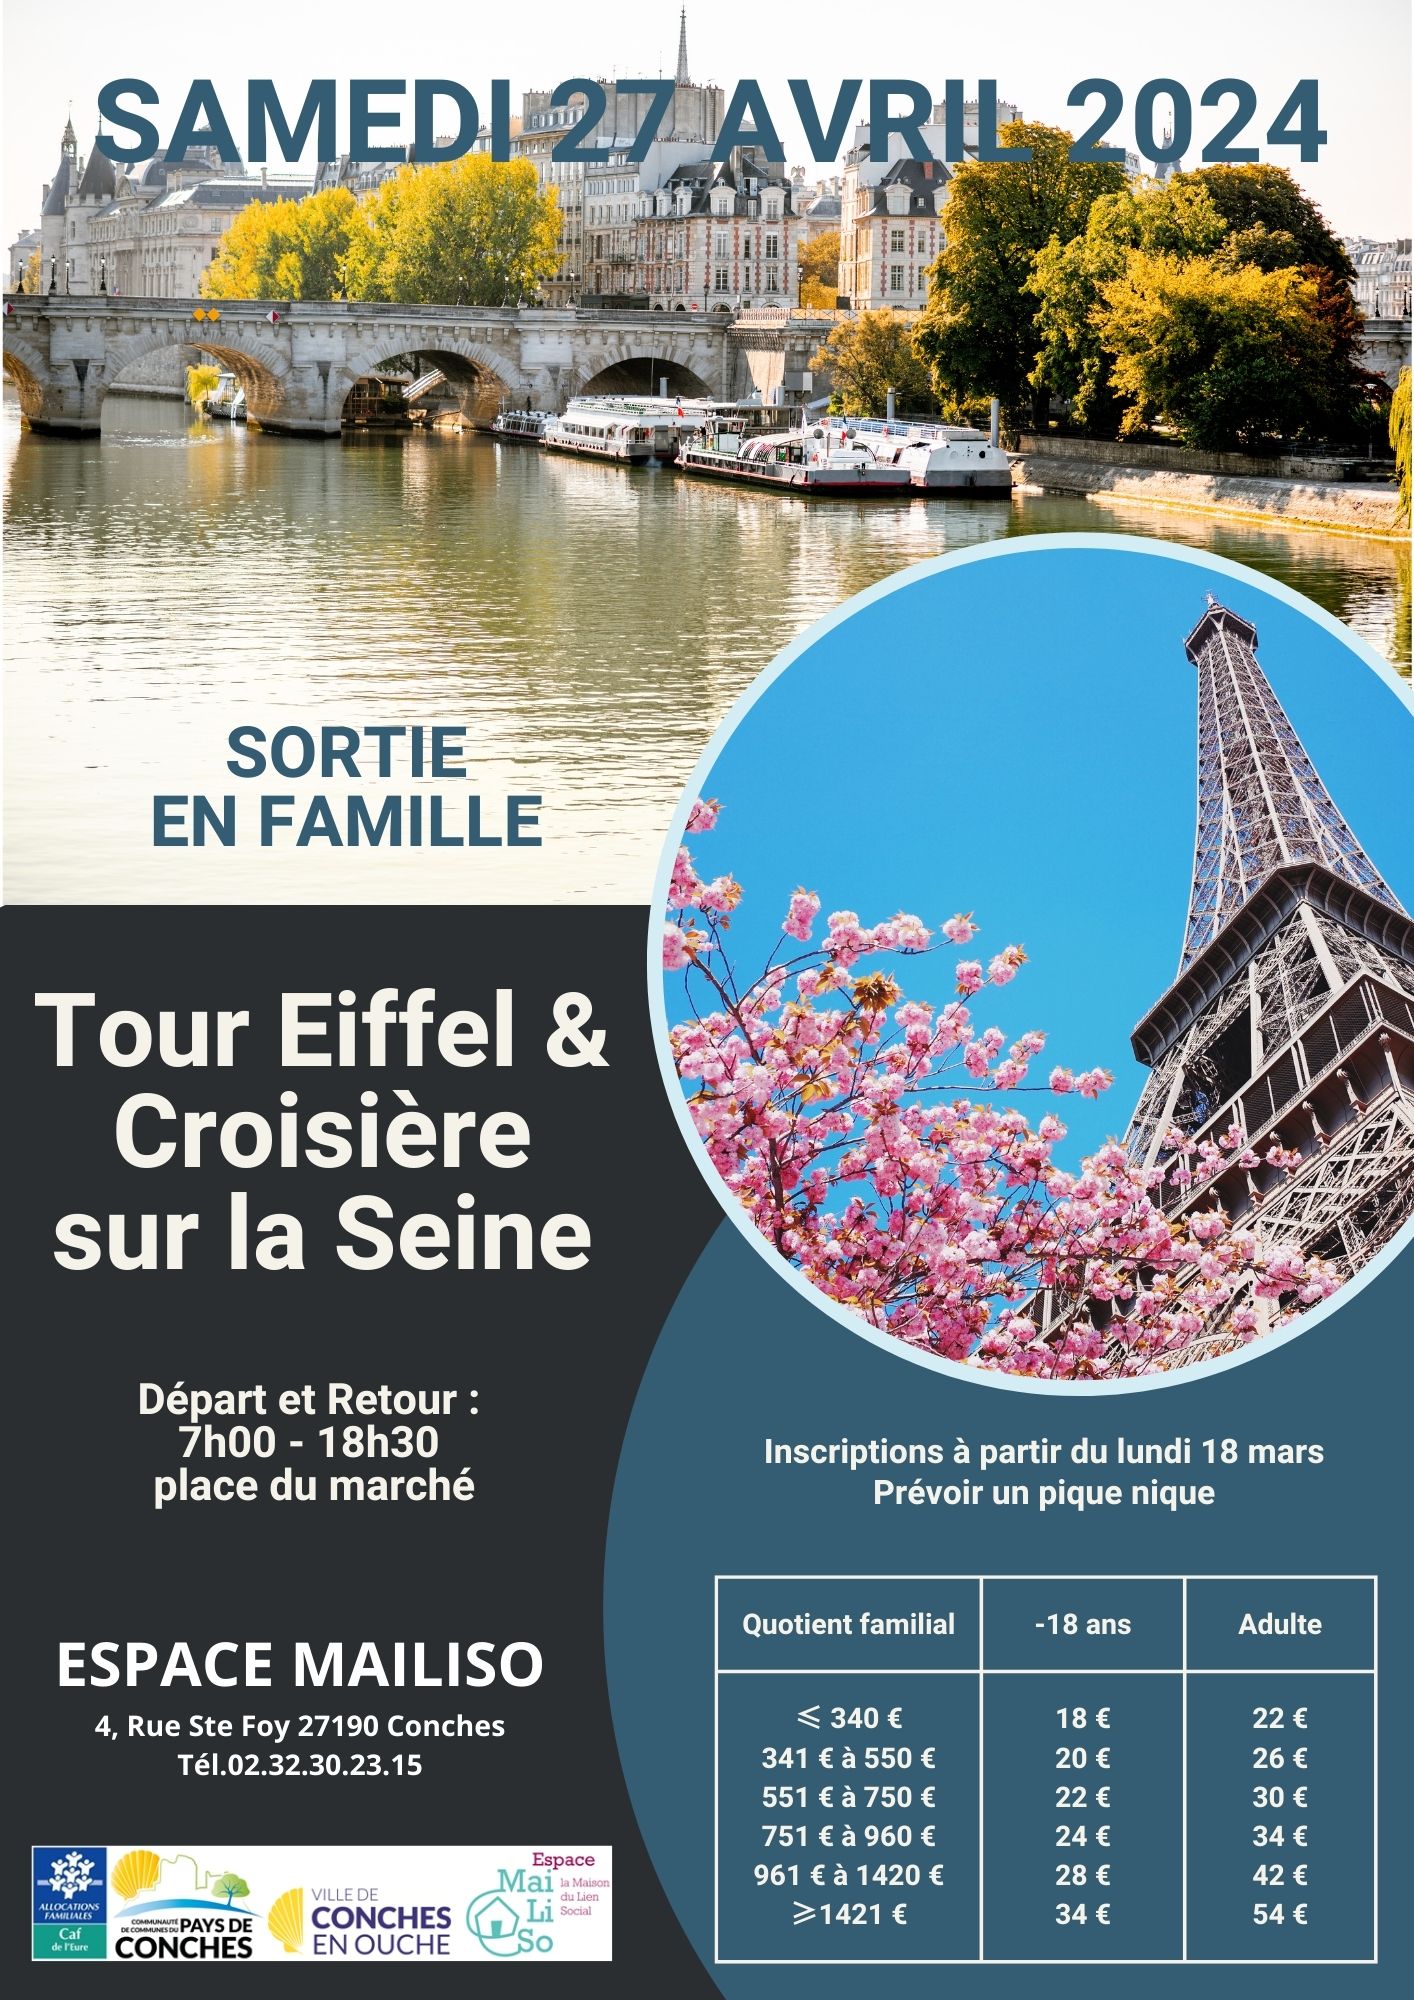 Tour Eiffel & Croisière sur la Seine samedi 27 avril 2024